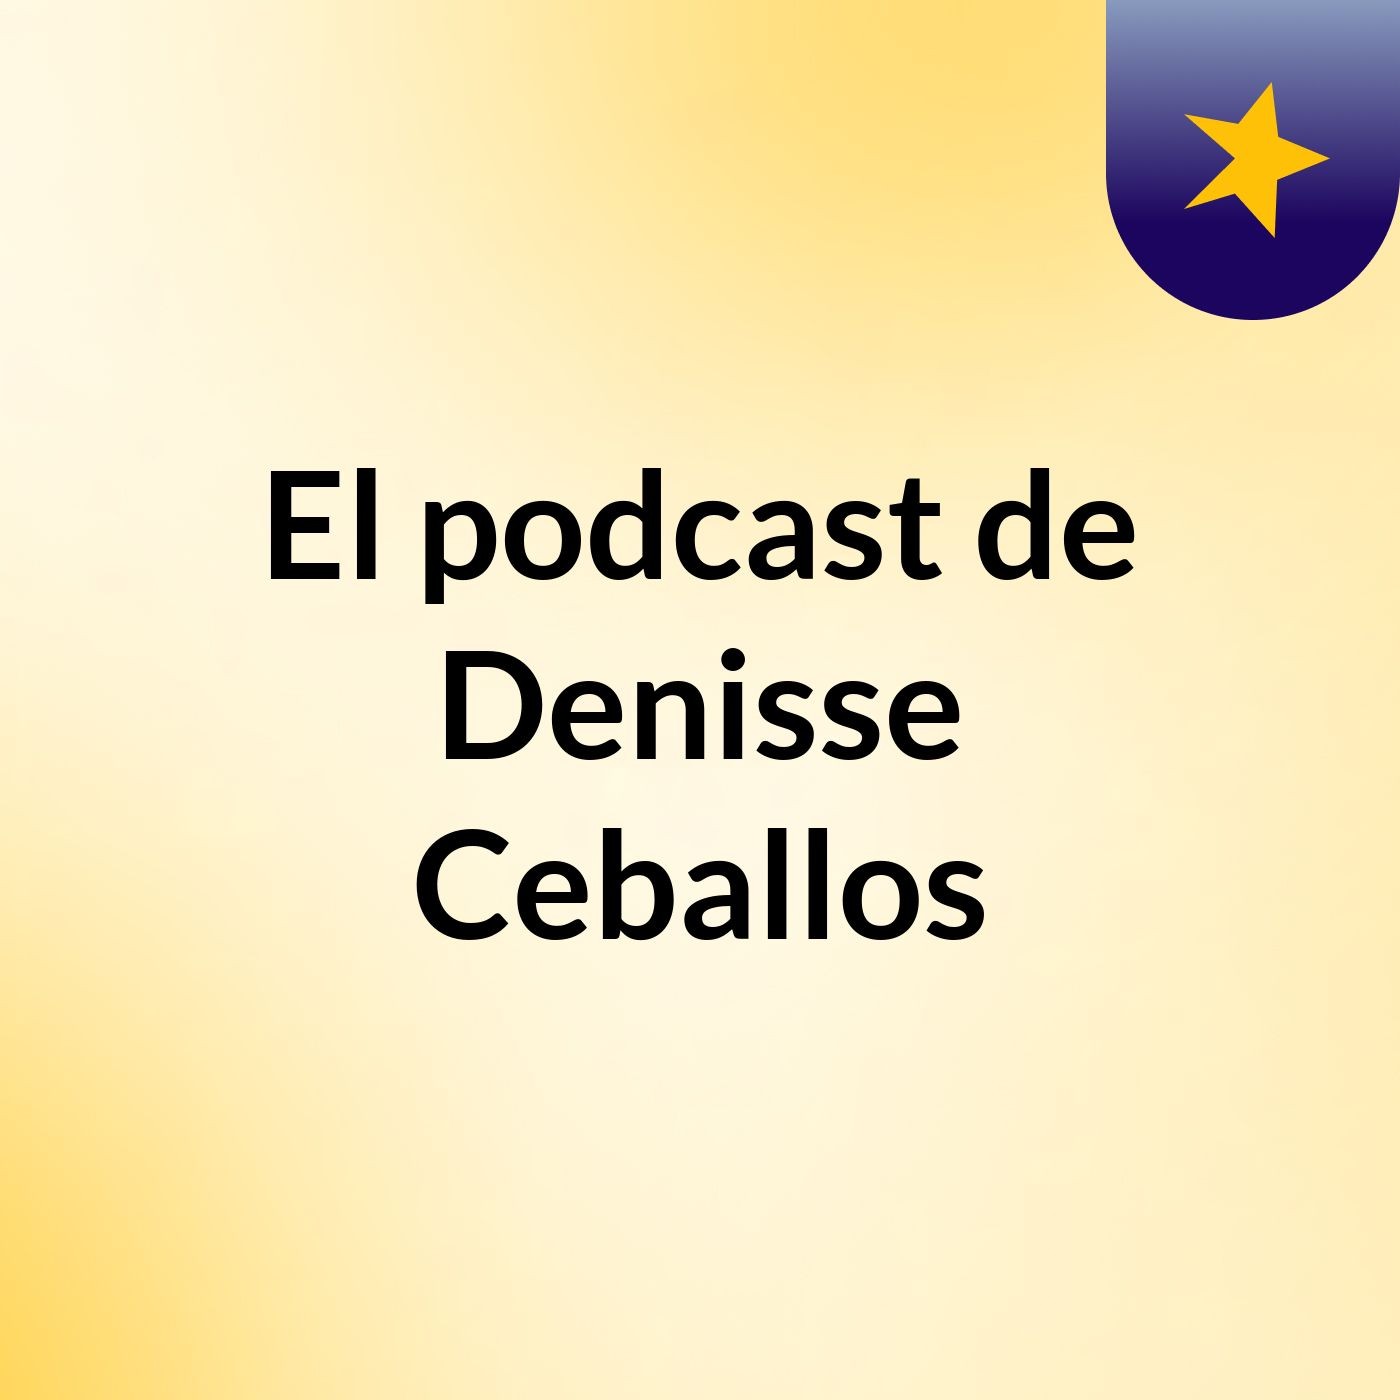 El podcast de Denisse Ceballos